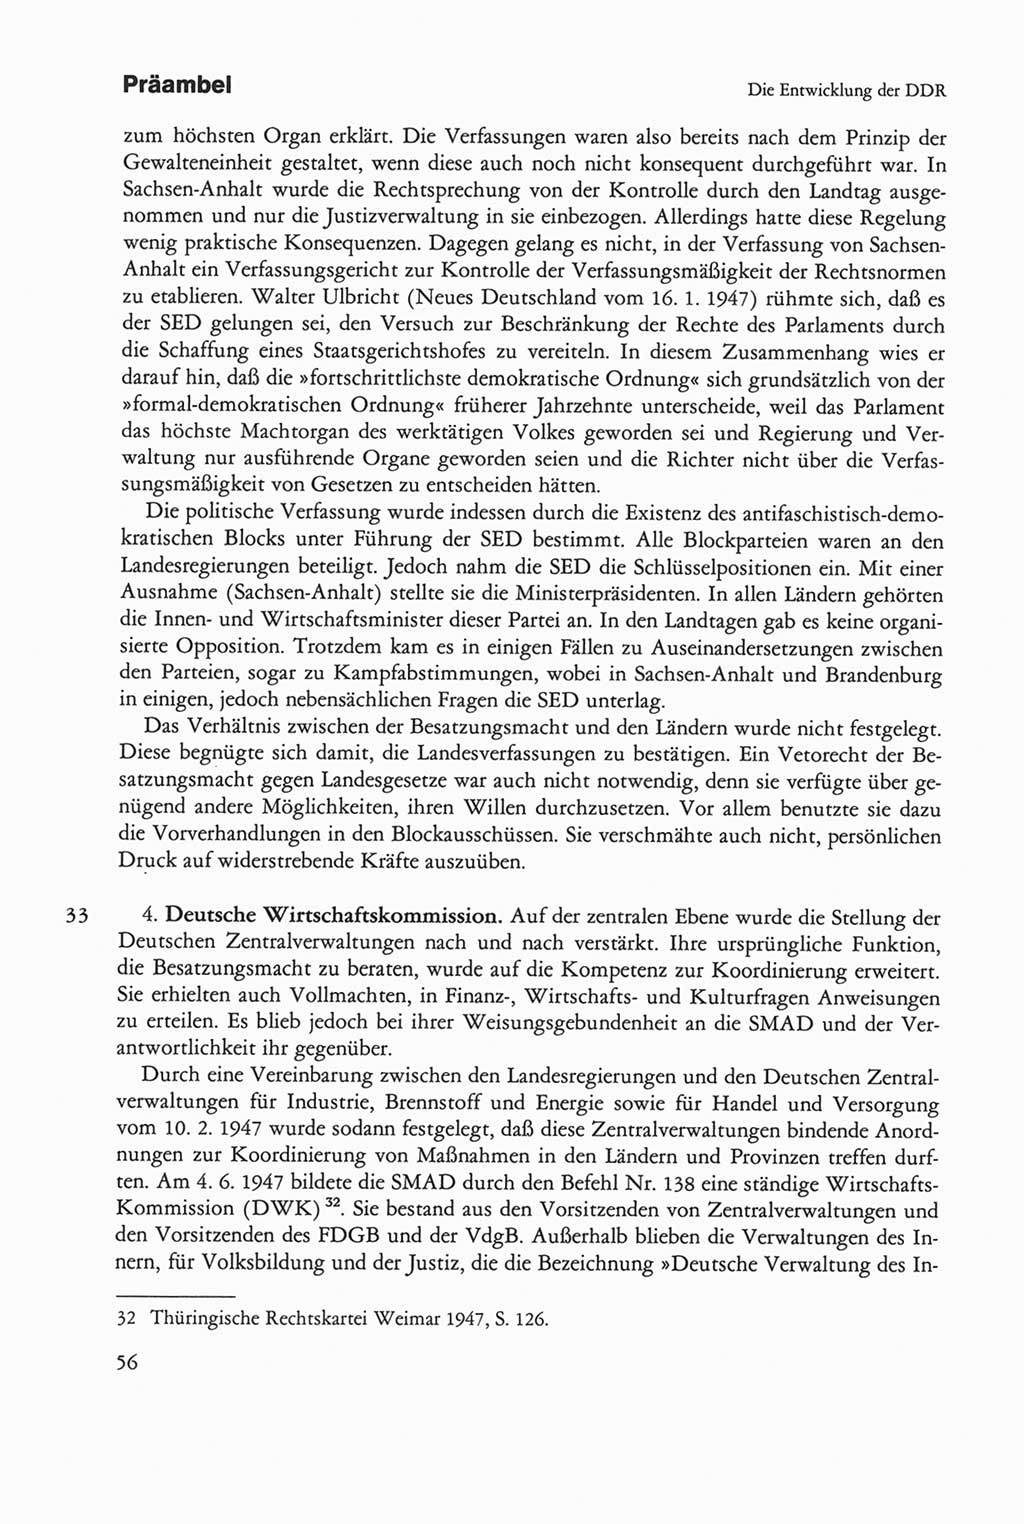 Die sozialistische Verfassung der Deutschen Demokratischen Republik (DDR), Kommentar 1982, Seite 56 (Soz. Verf. DDR Komm. 1982, S. 56)